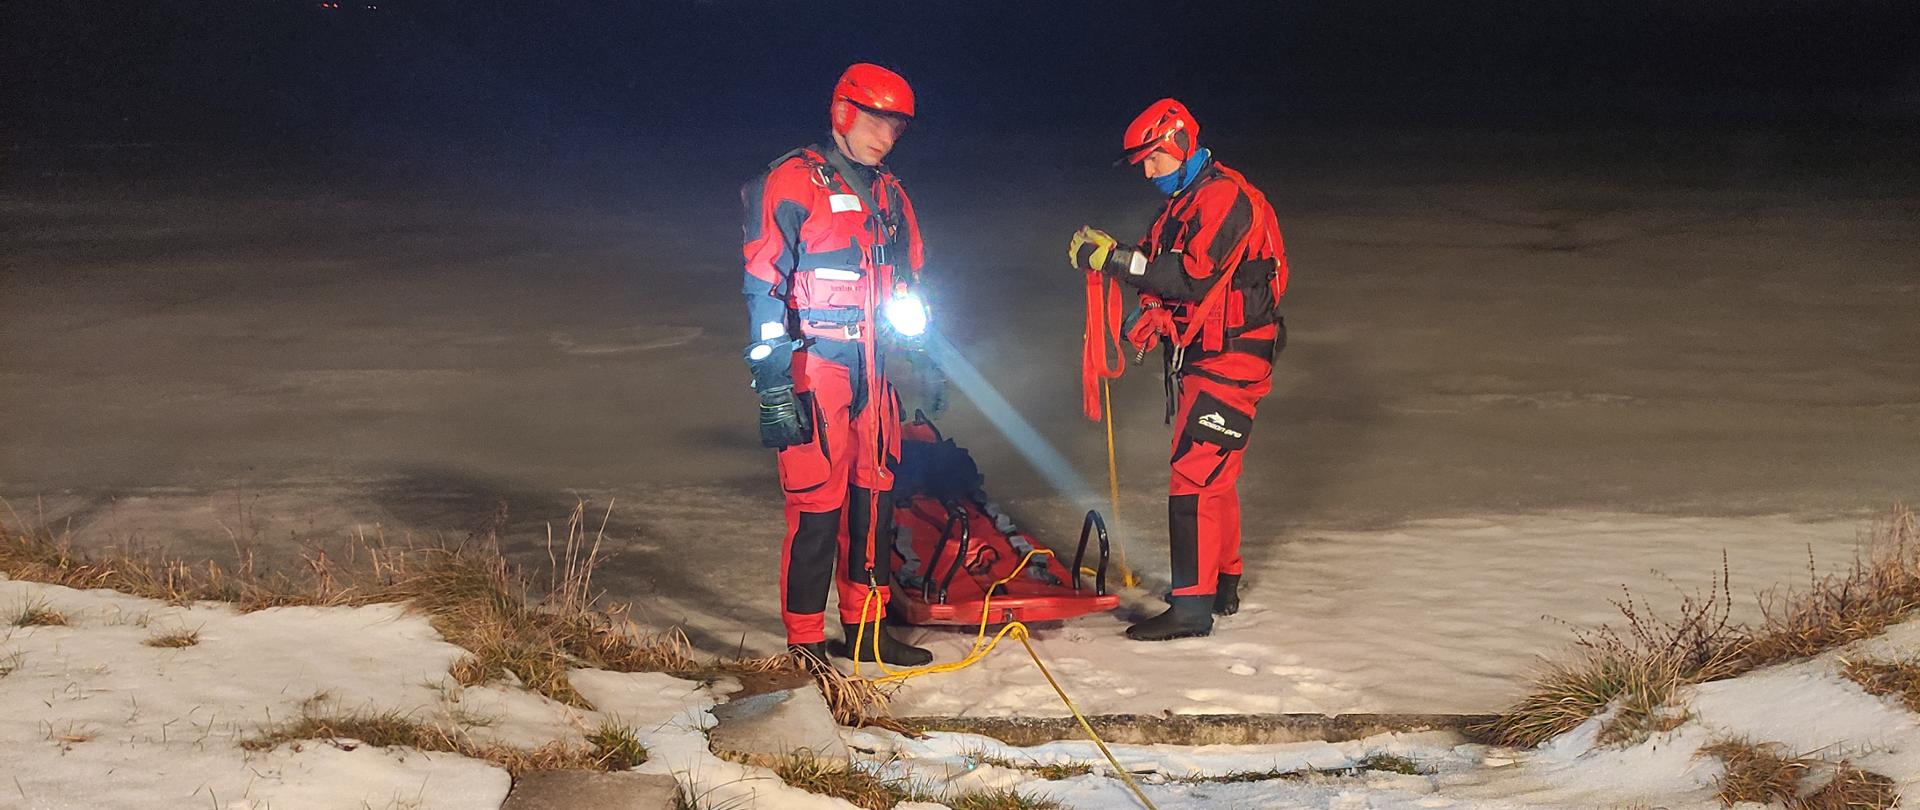 Dwóch strażaków w czerwonych skafandrach lodowych przygotowuje się do wejścia na zamarznięty staw, warunki nocne, jeden świeci latarką.